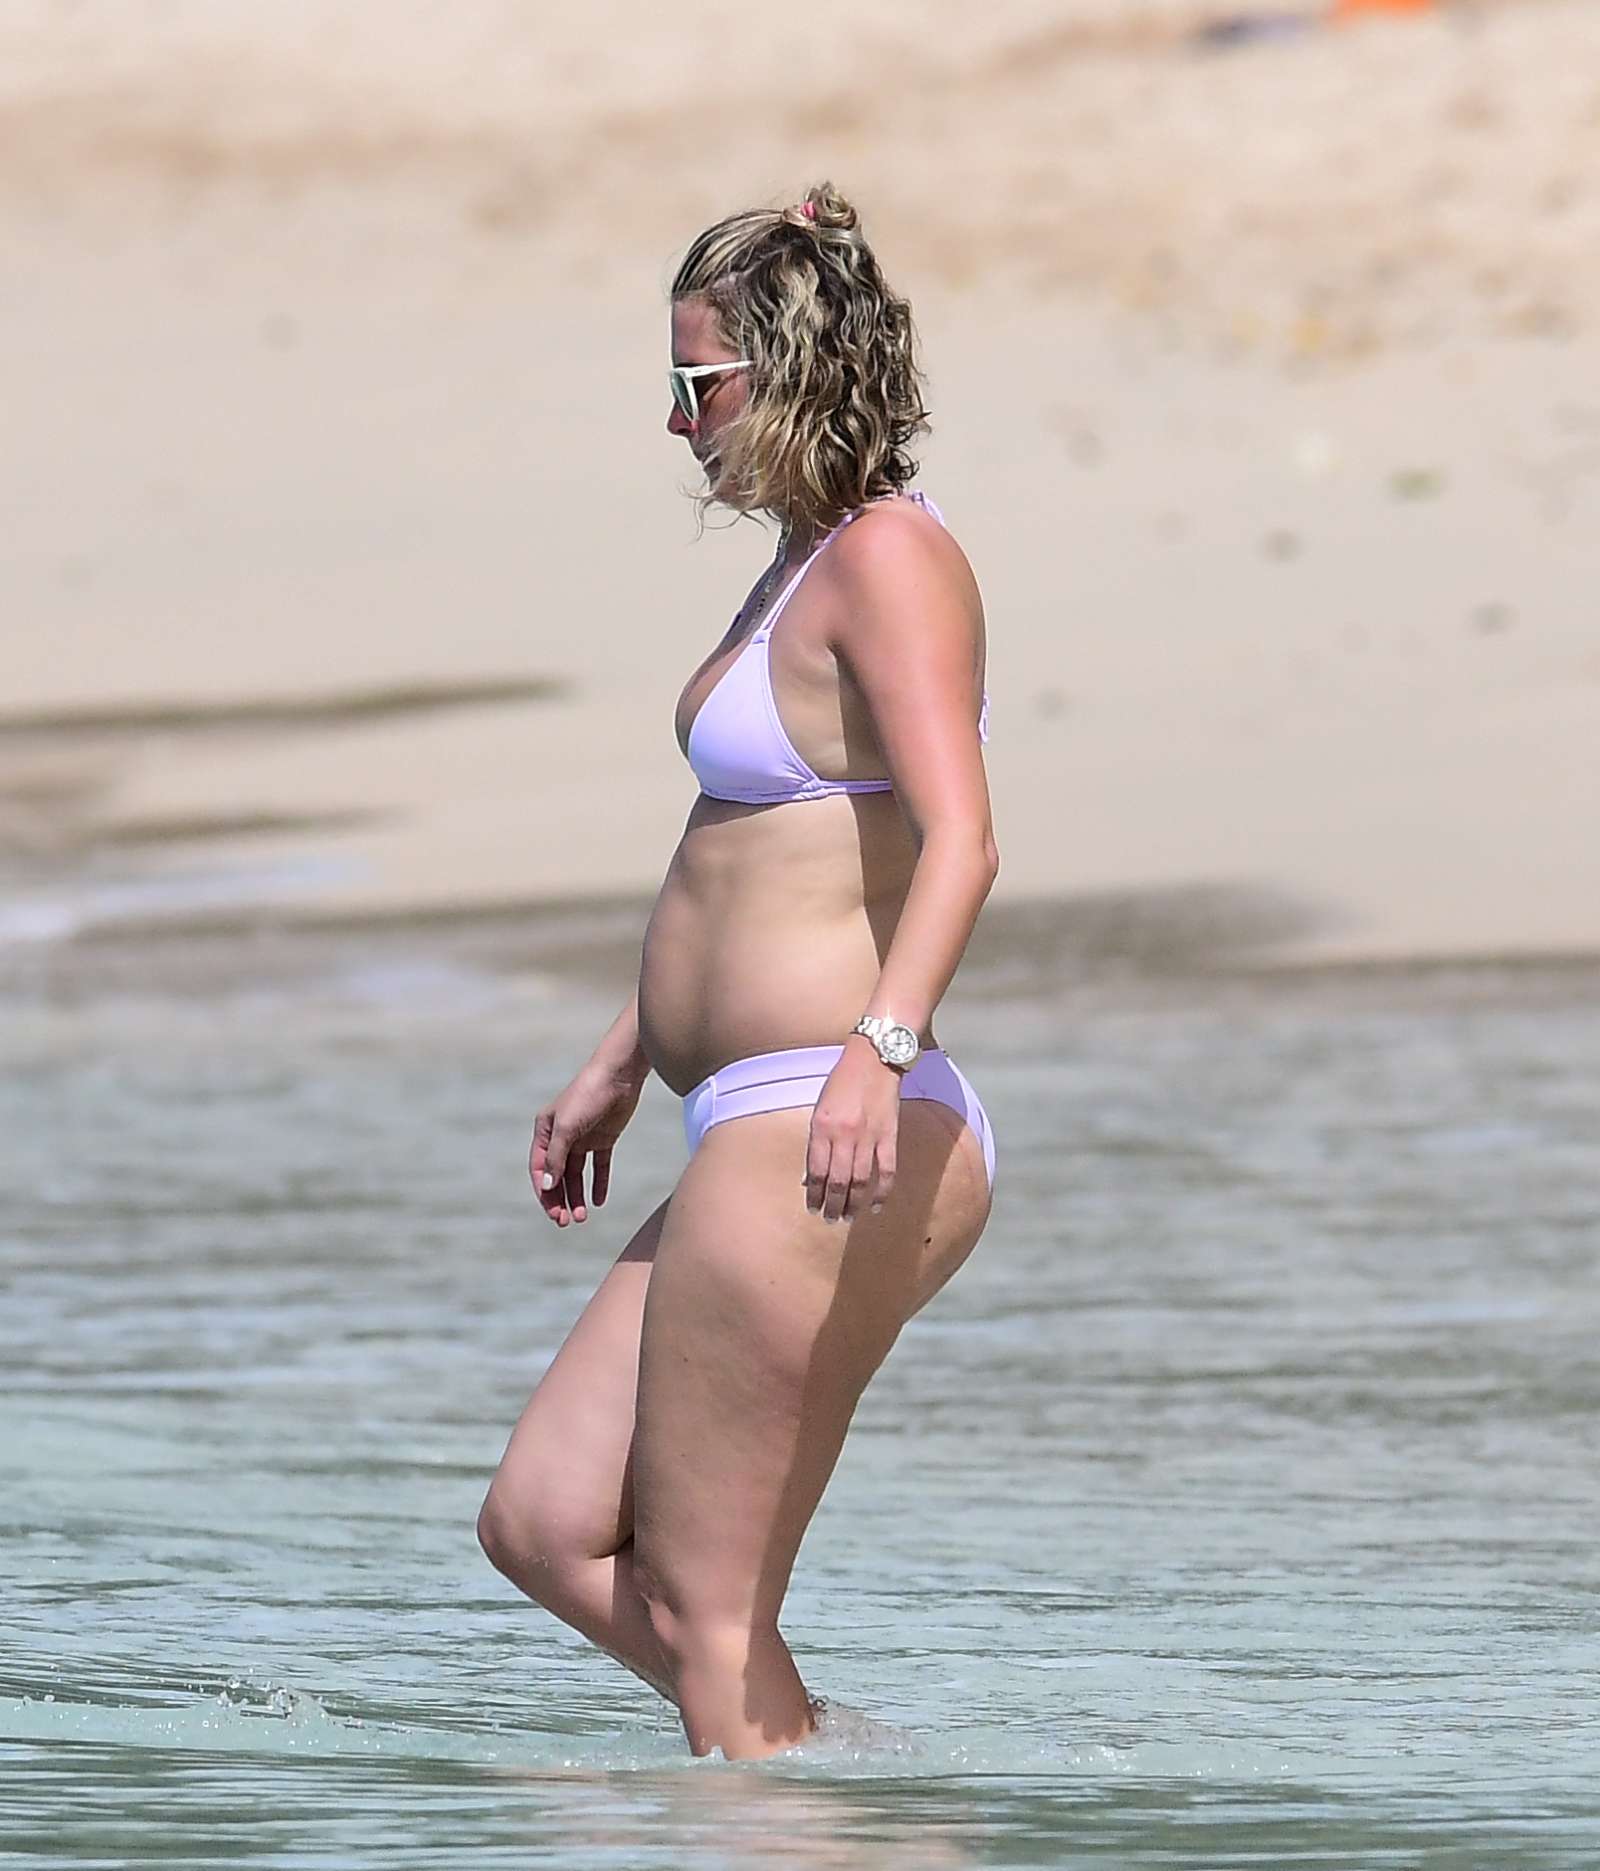 Rhea Durham in Bikini on the beach in Barbados. 